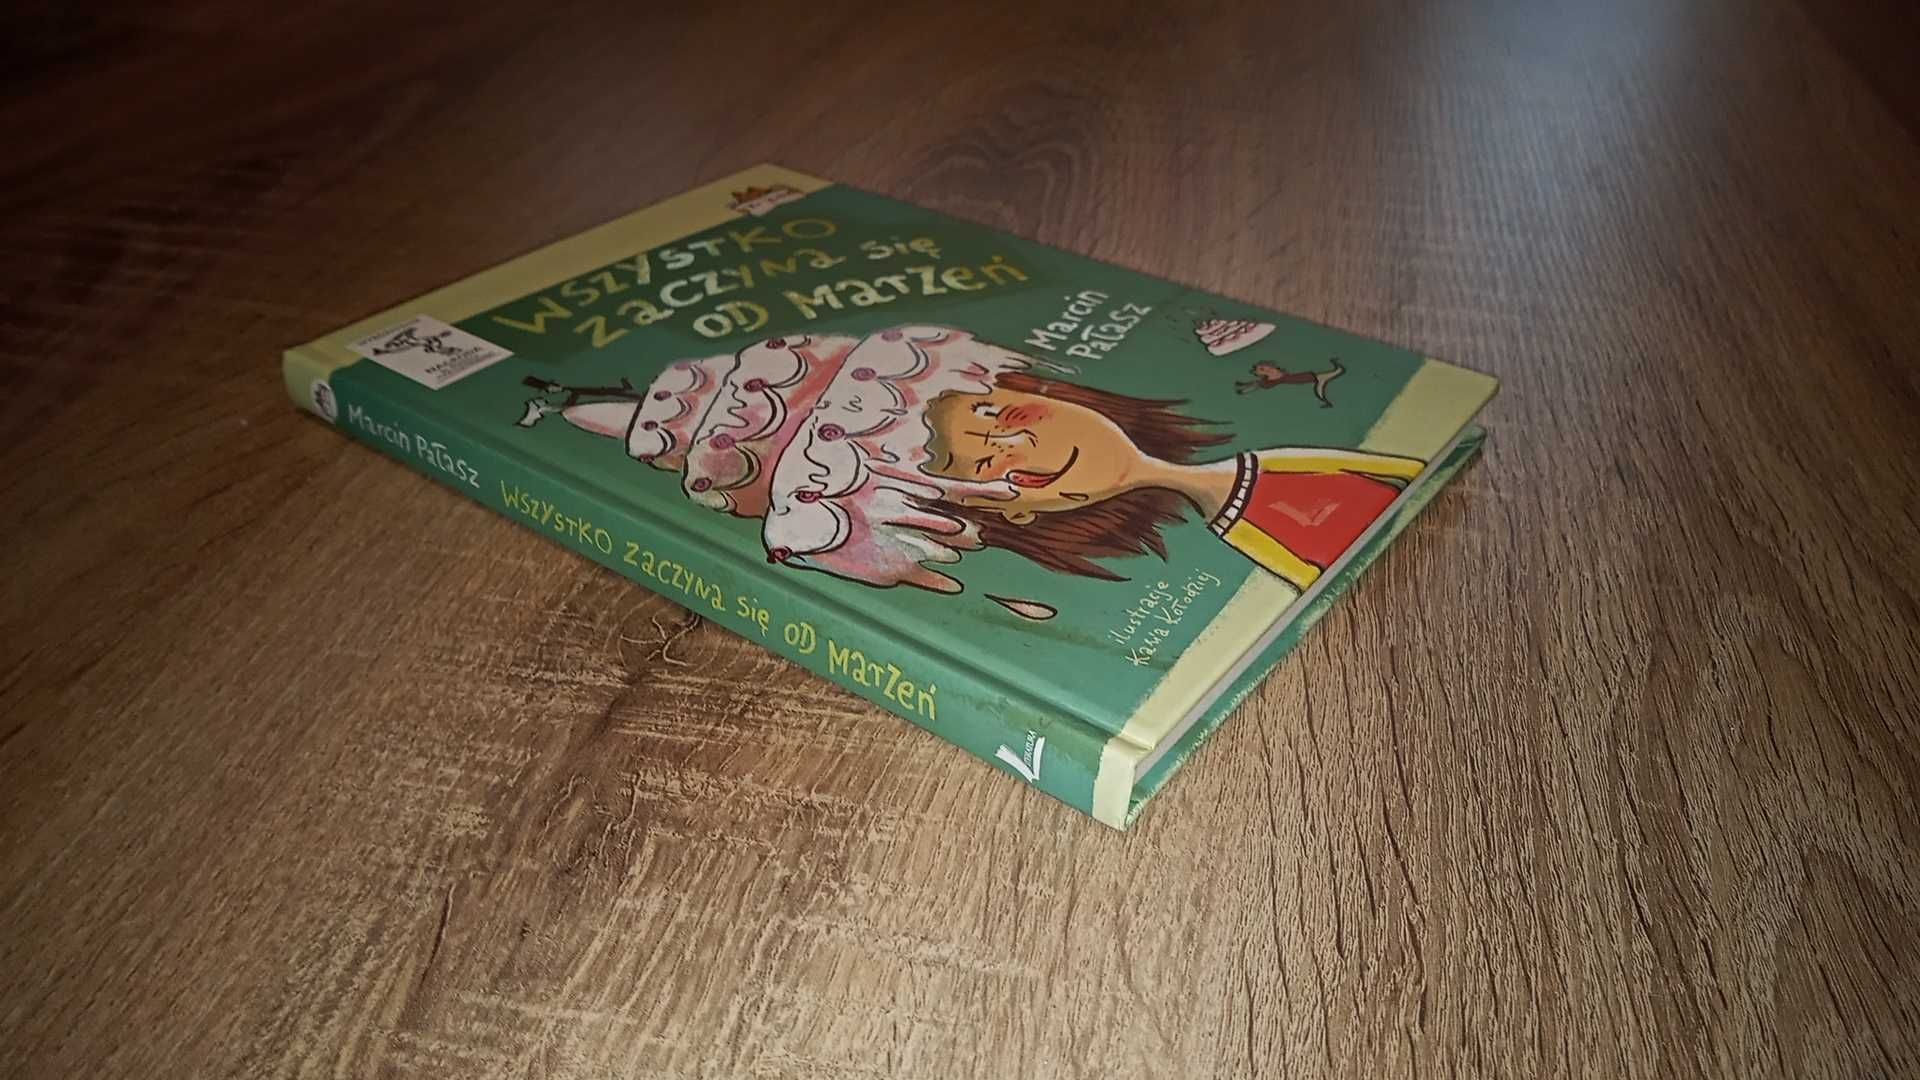 "Wszystko zaczyna się od marzeń" Marcin Pałasz książka dla dzieci